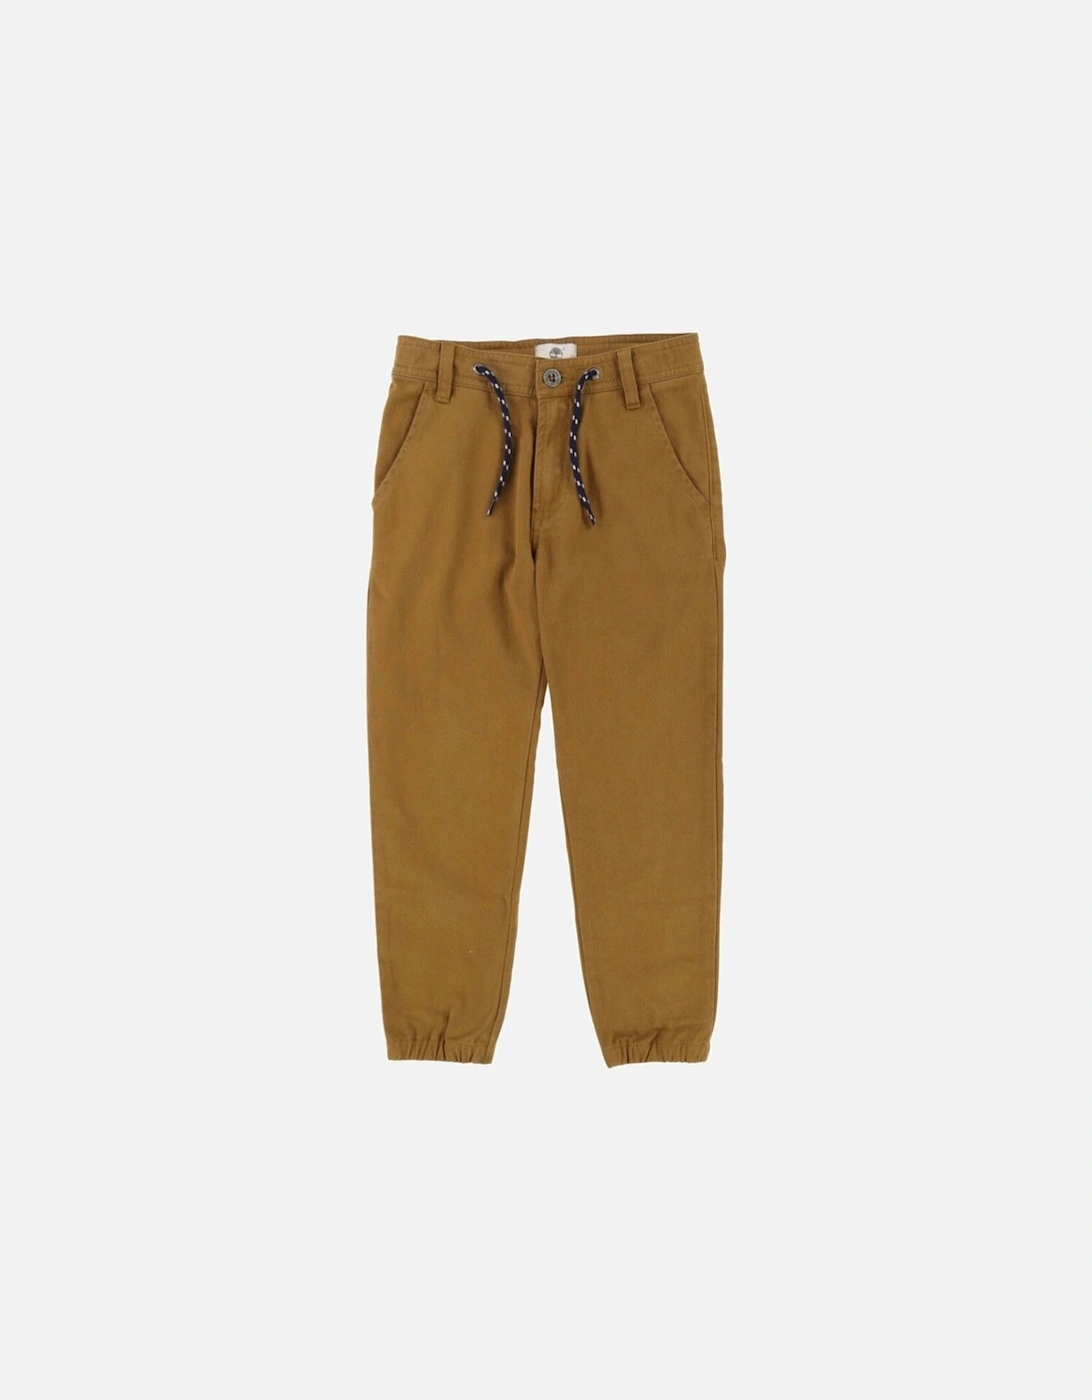 Brown Pants, 3 of 2